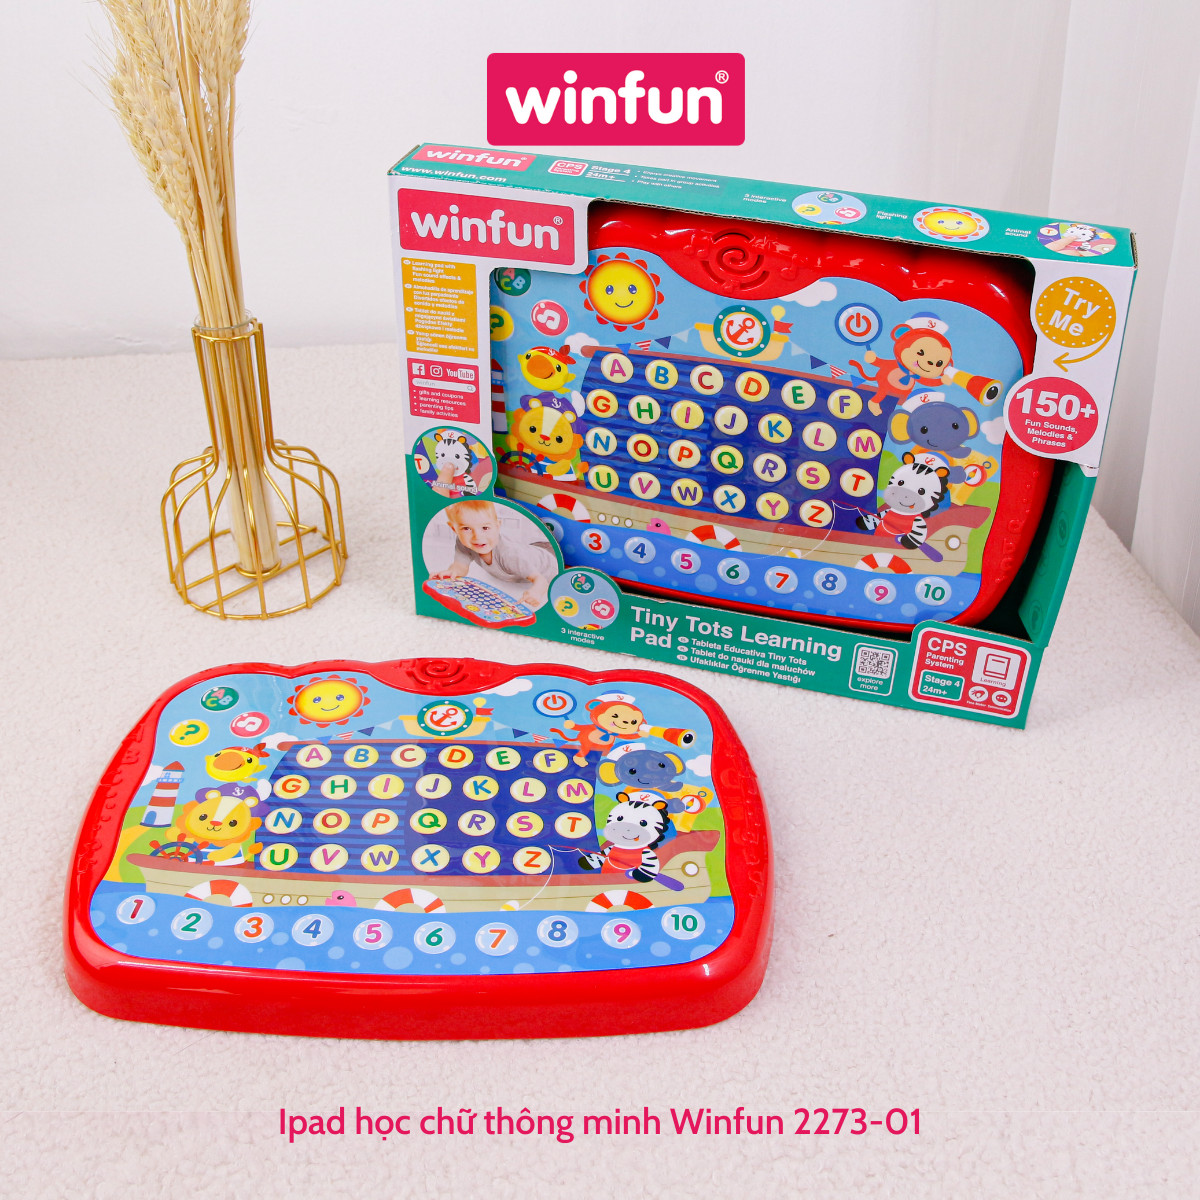 Đồ chơi Ipad phát triển ngôn ngữ, học chữ thông minh cho bé Winfun - 2273